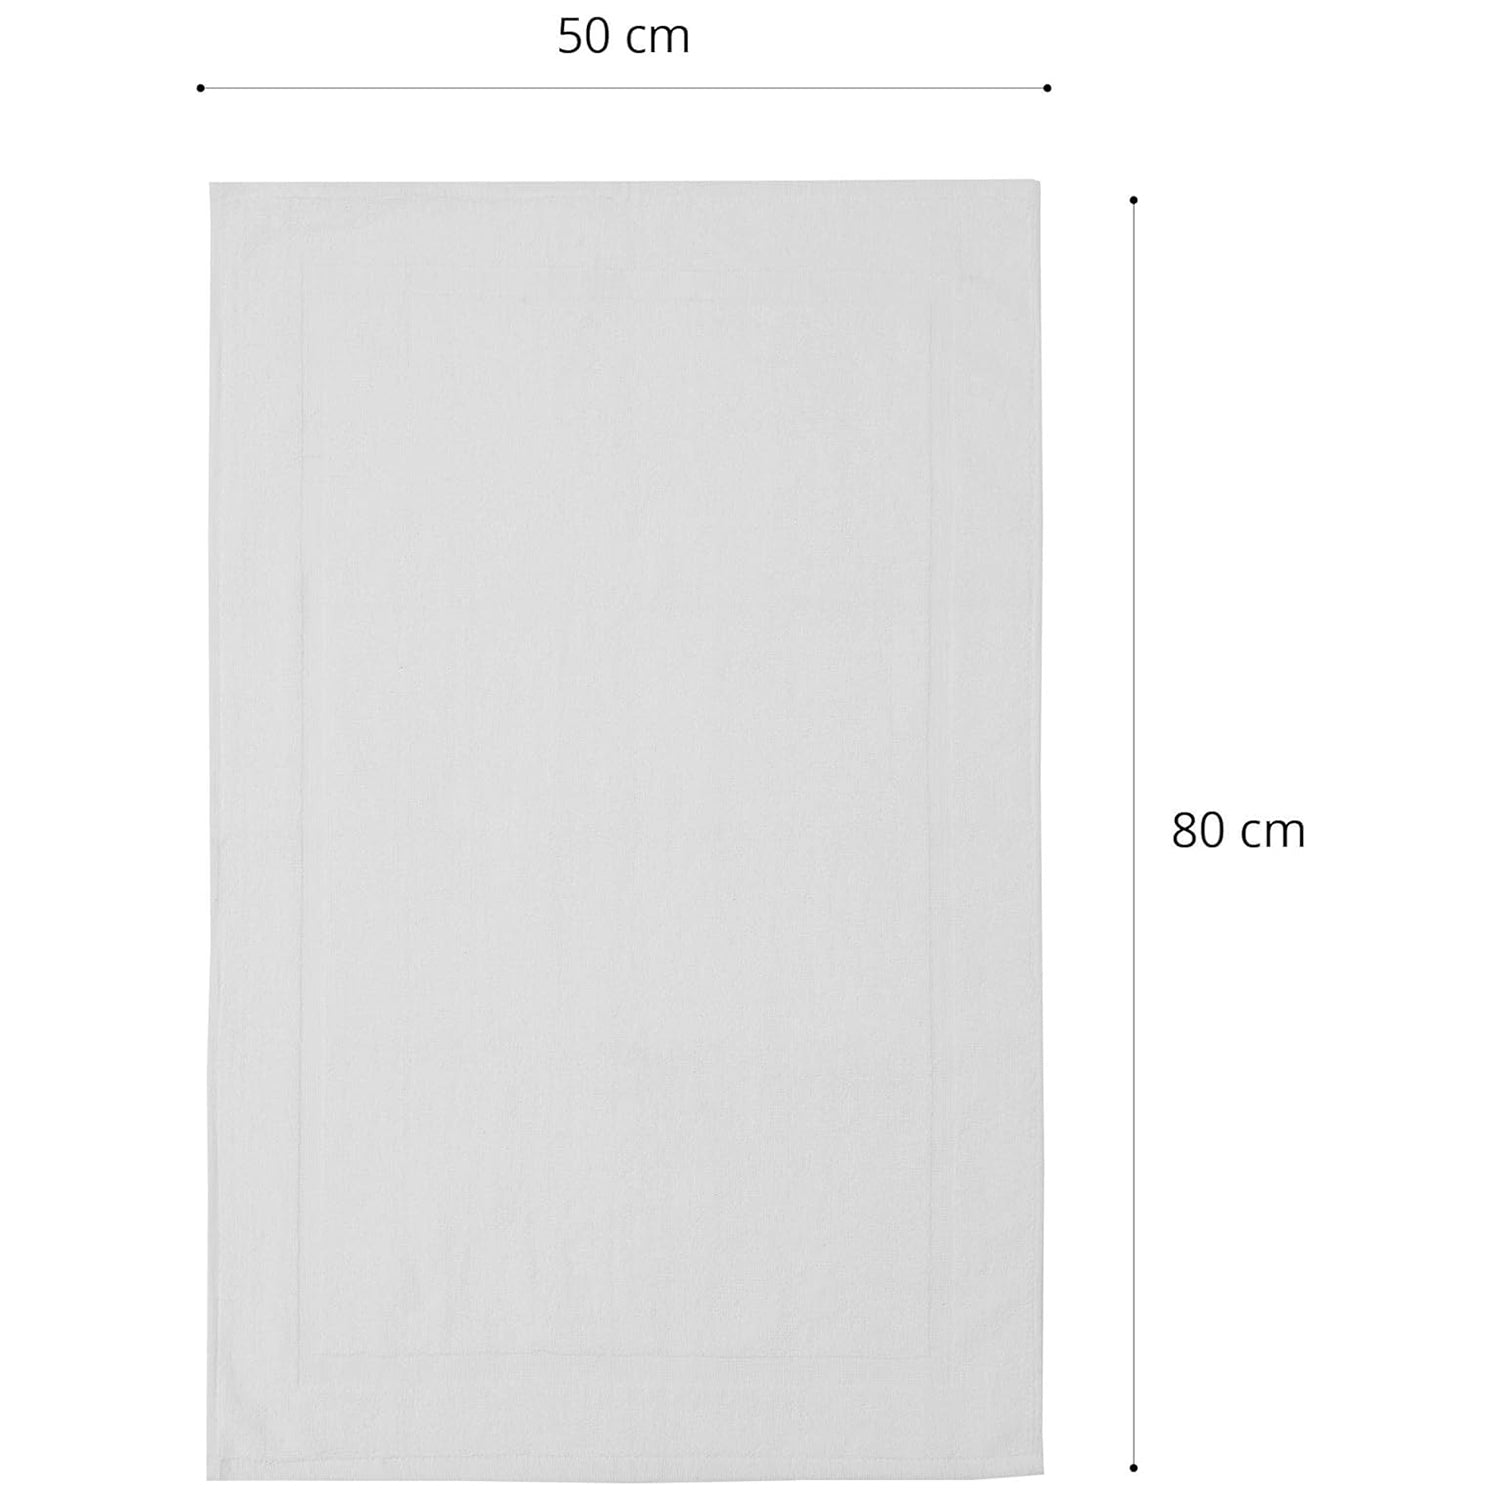 Premium Baumwoll Badematte Frottee - 50 x 80 cm - 2er-Set - Weiß